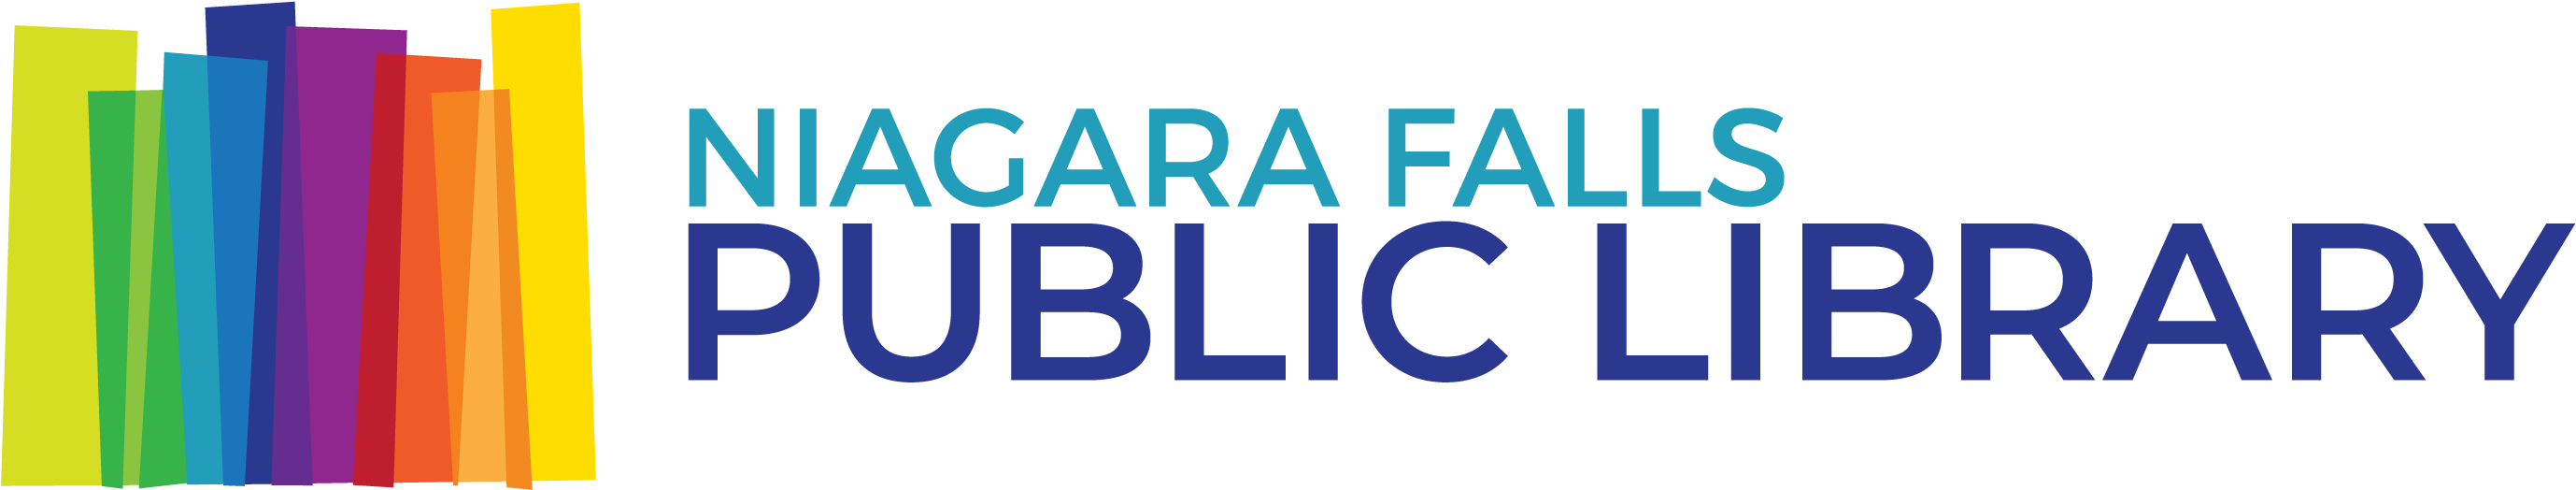 Catalog - Niagara Falls Public Library Logo Clipart (2879x605), Png Download